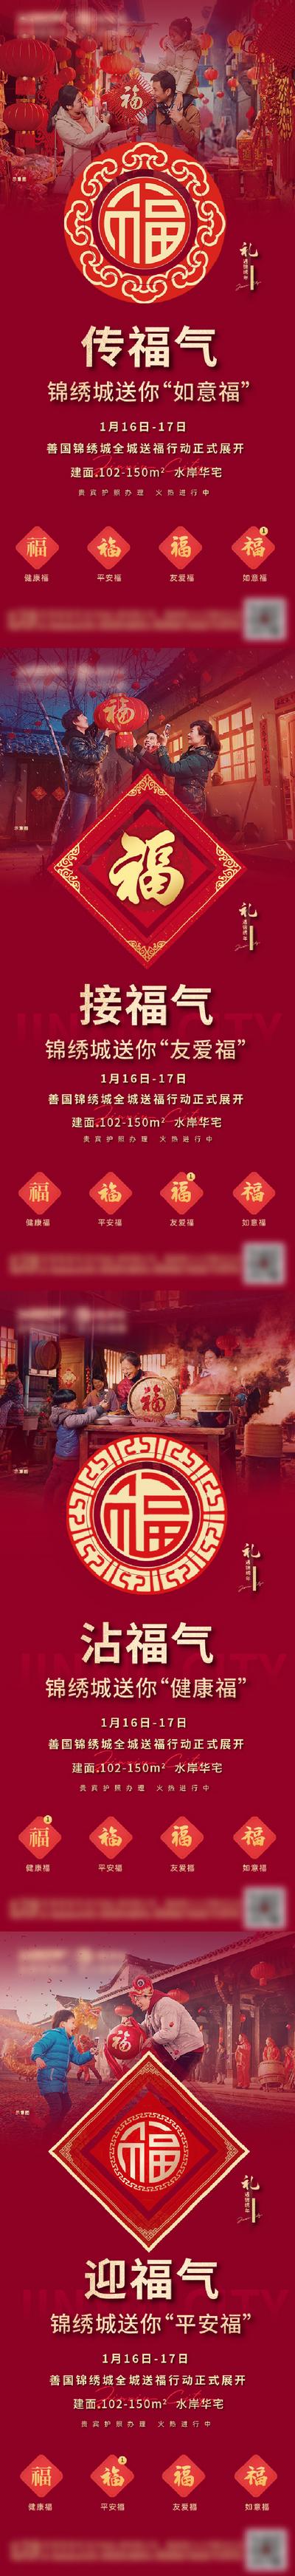 【南门网】海报 房地产 返乡置业 新年 除夕 中国传统节日 送福 五福 福字 系列